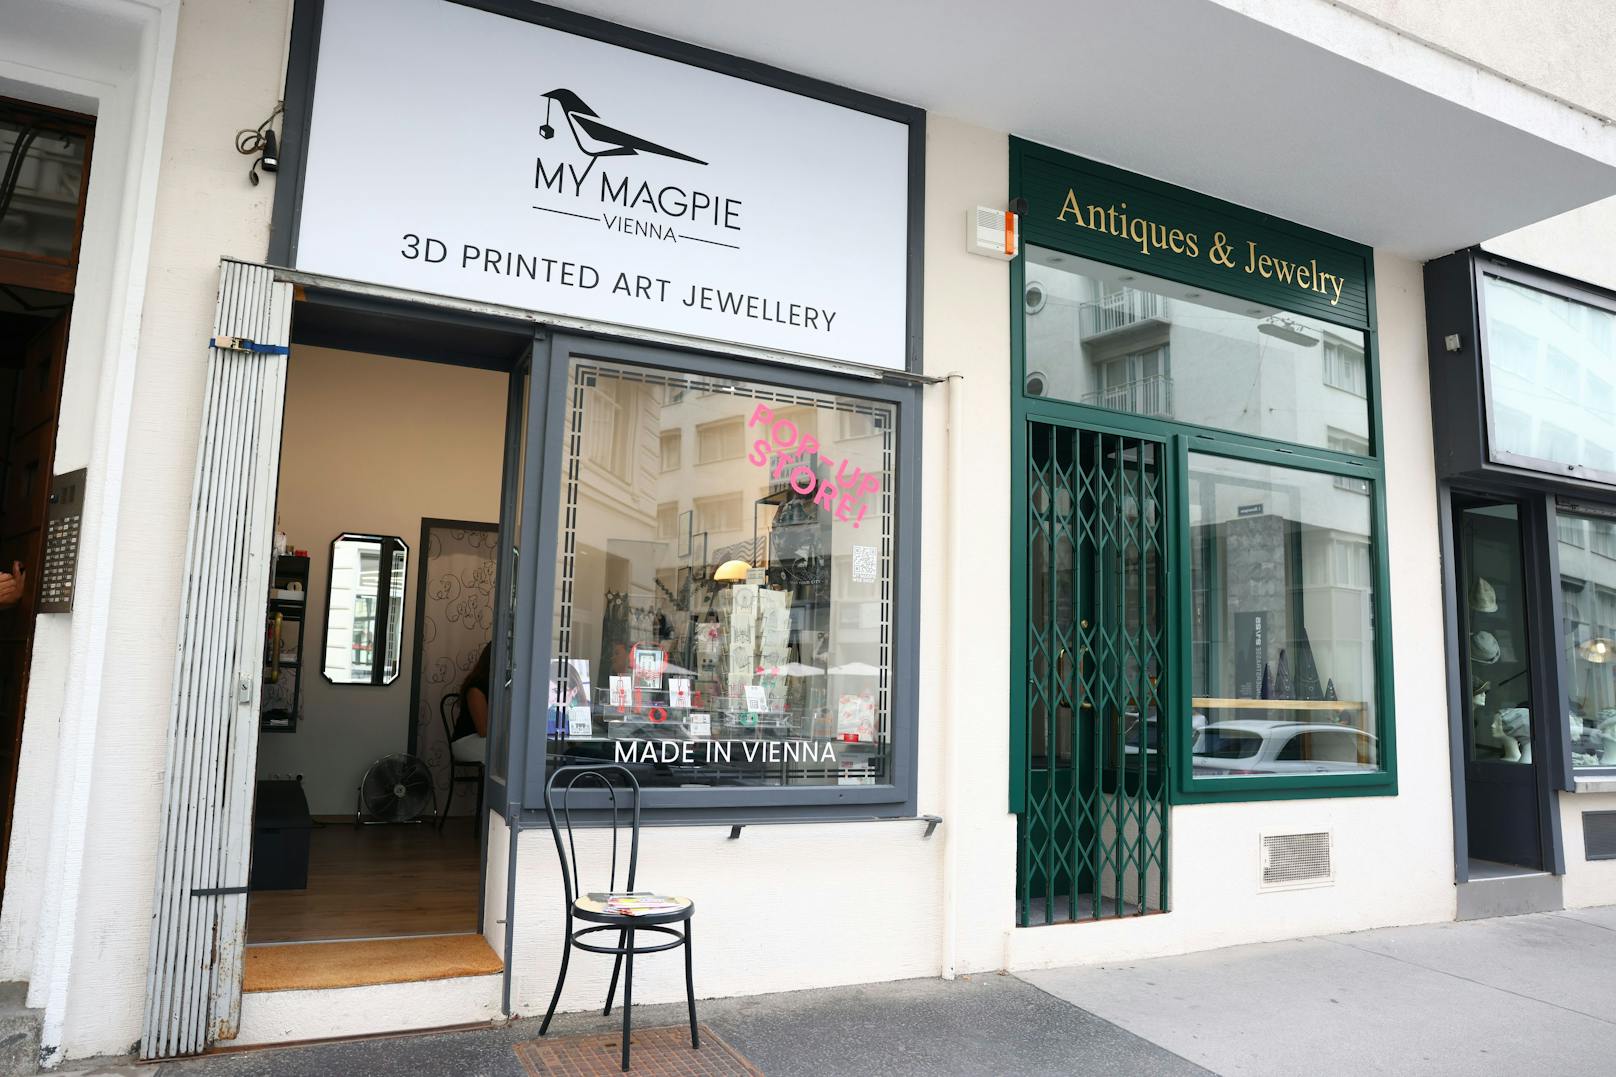 Bei "My Magpie" in der Singerstraße gibt es Schmuck aus dem 3D-Drucker.